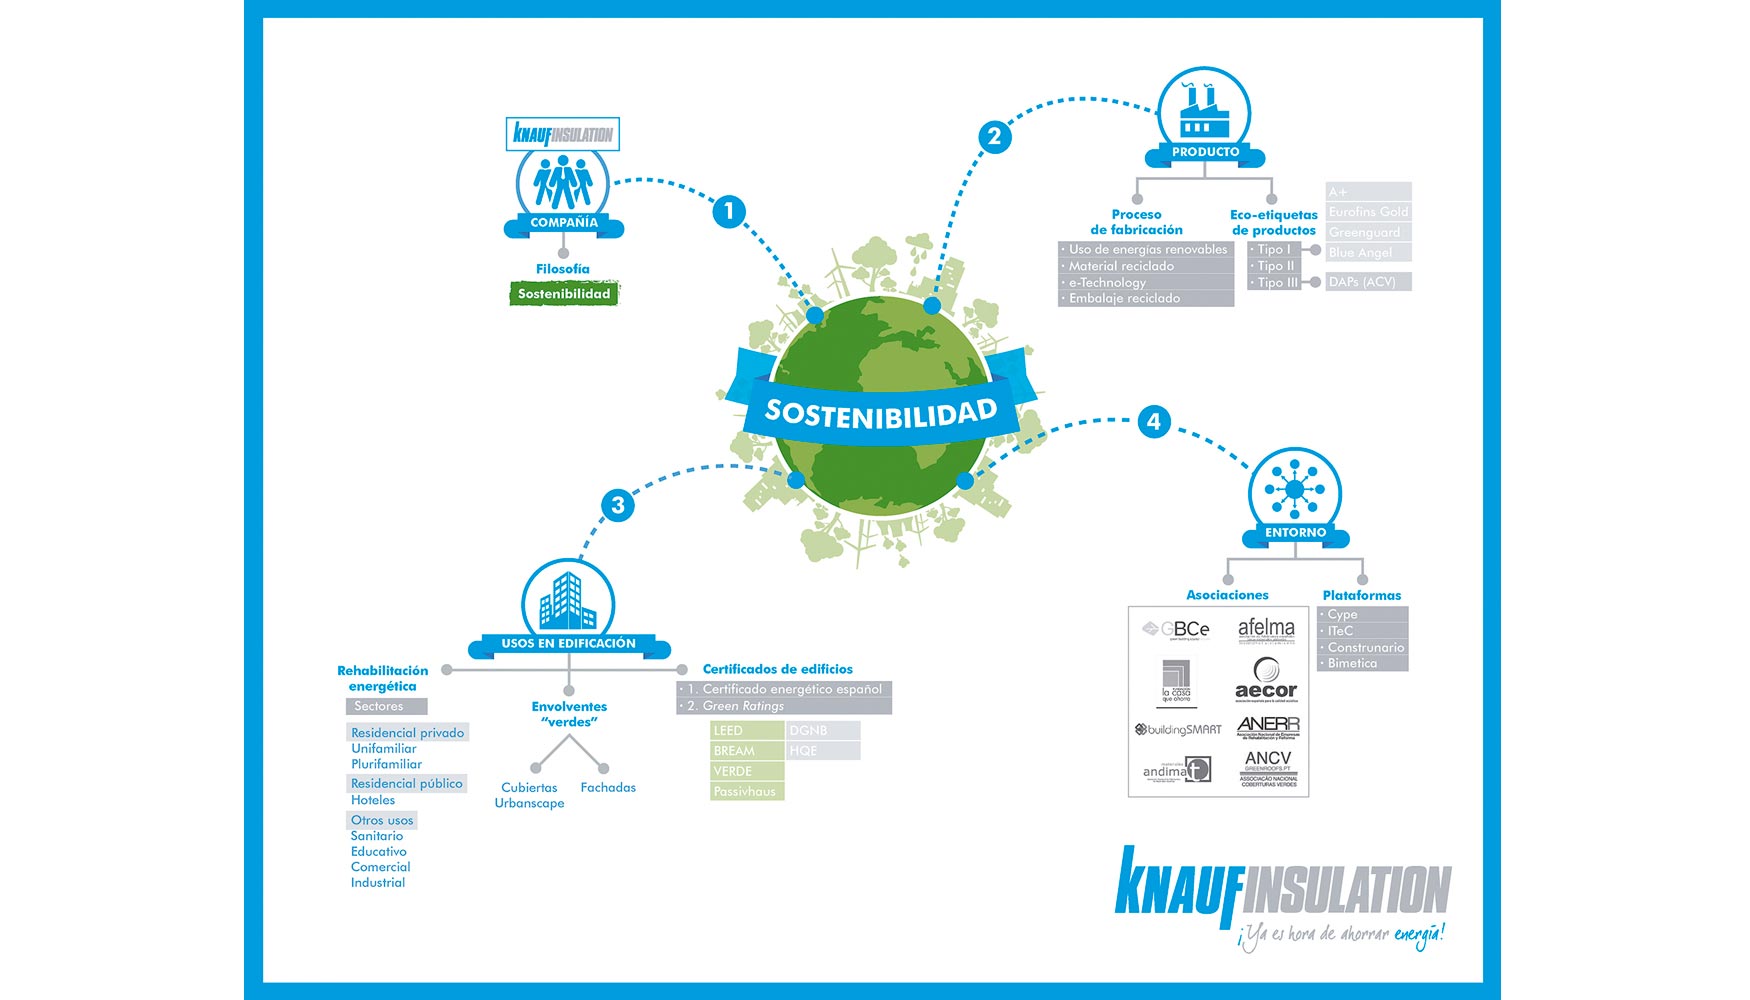 Grfico sobre sostenibilidad de Knauf Insulation